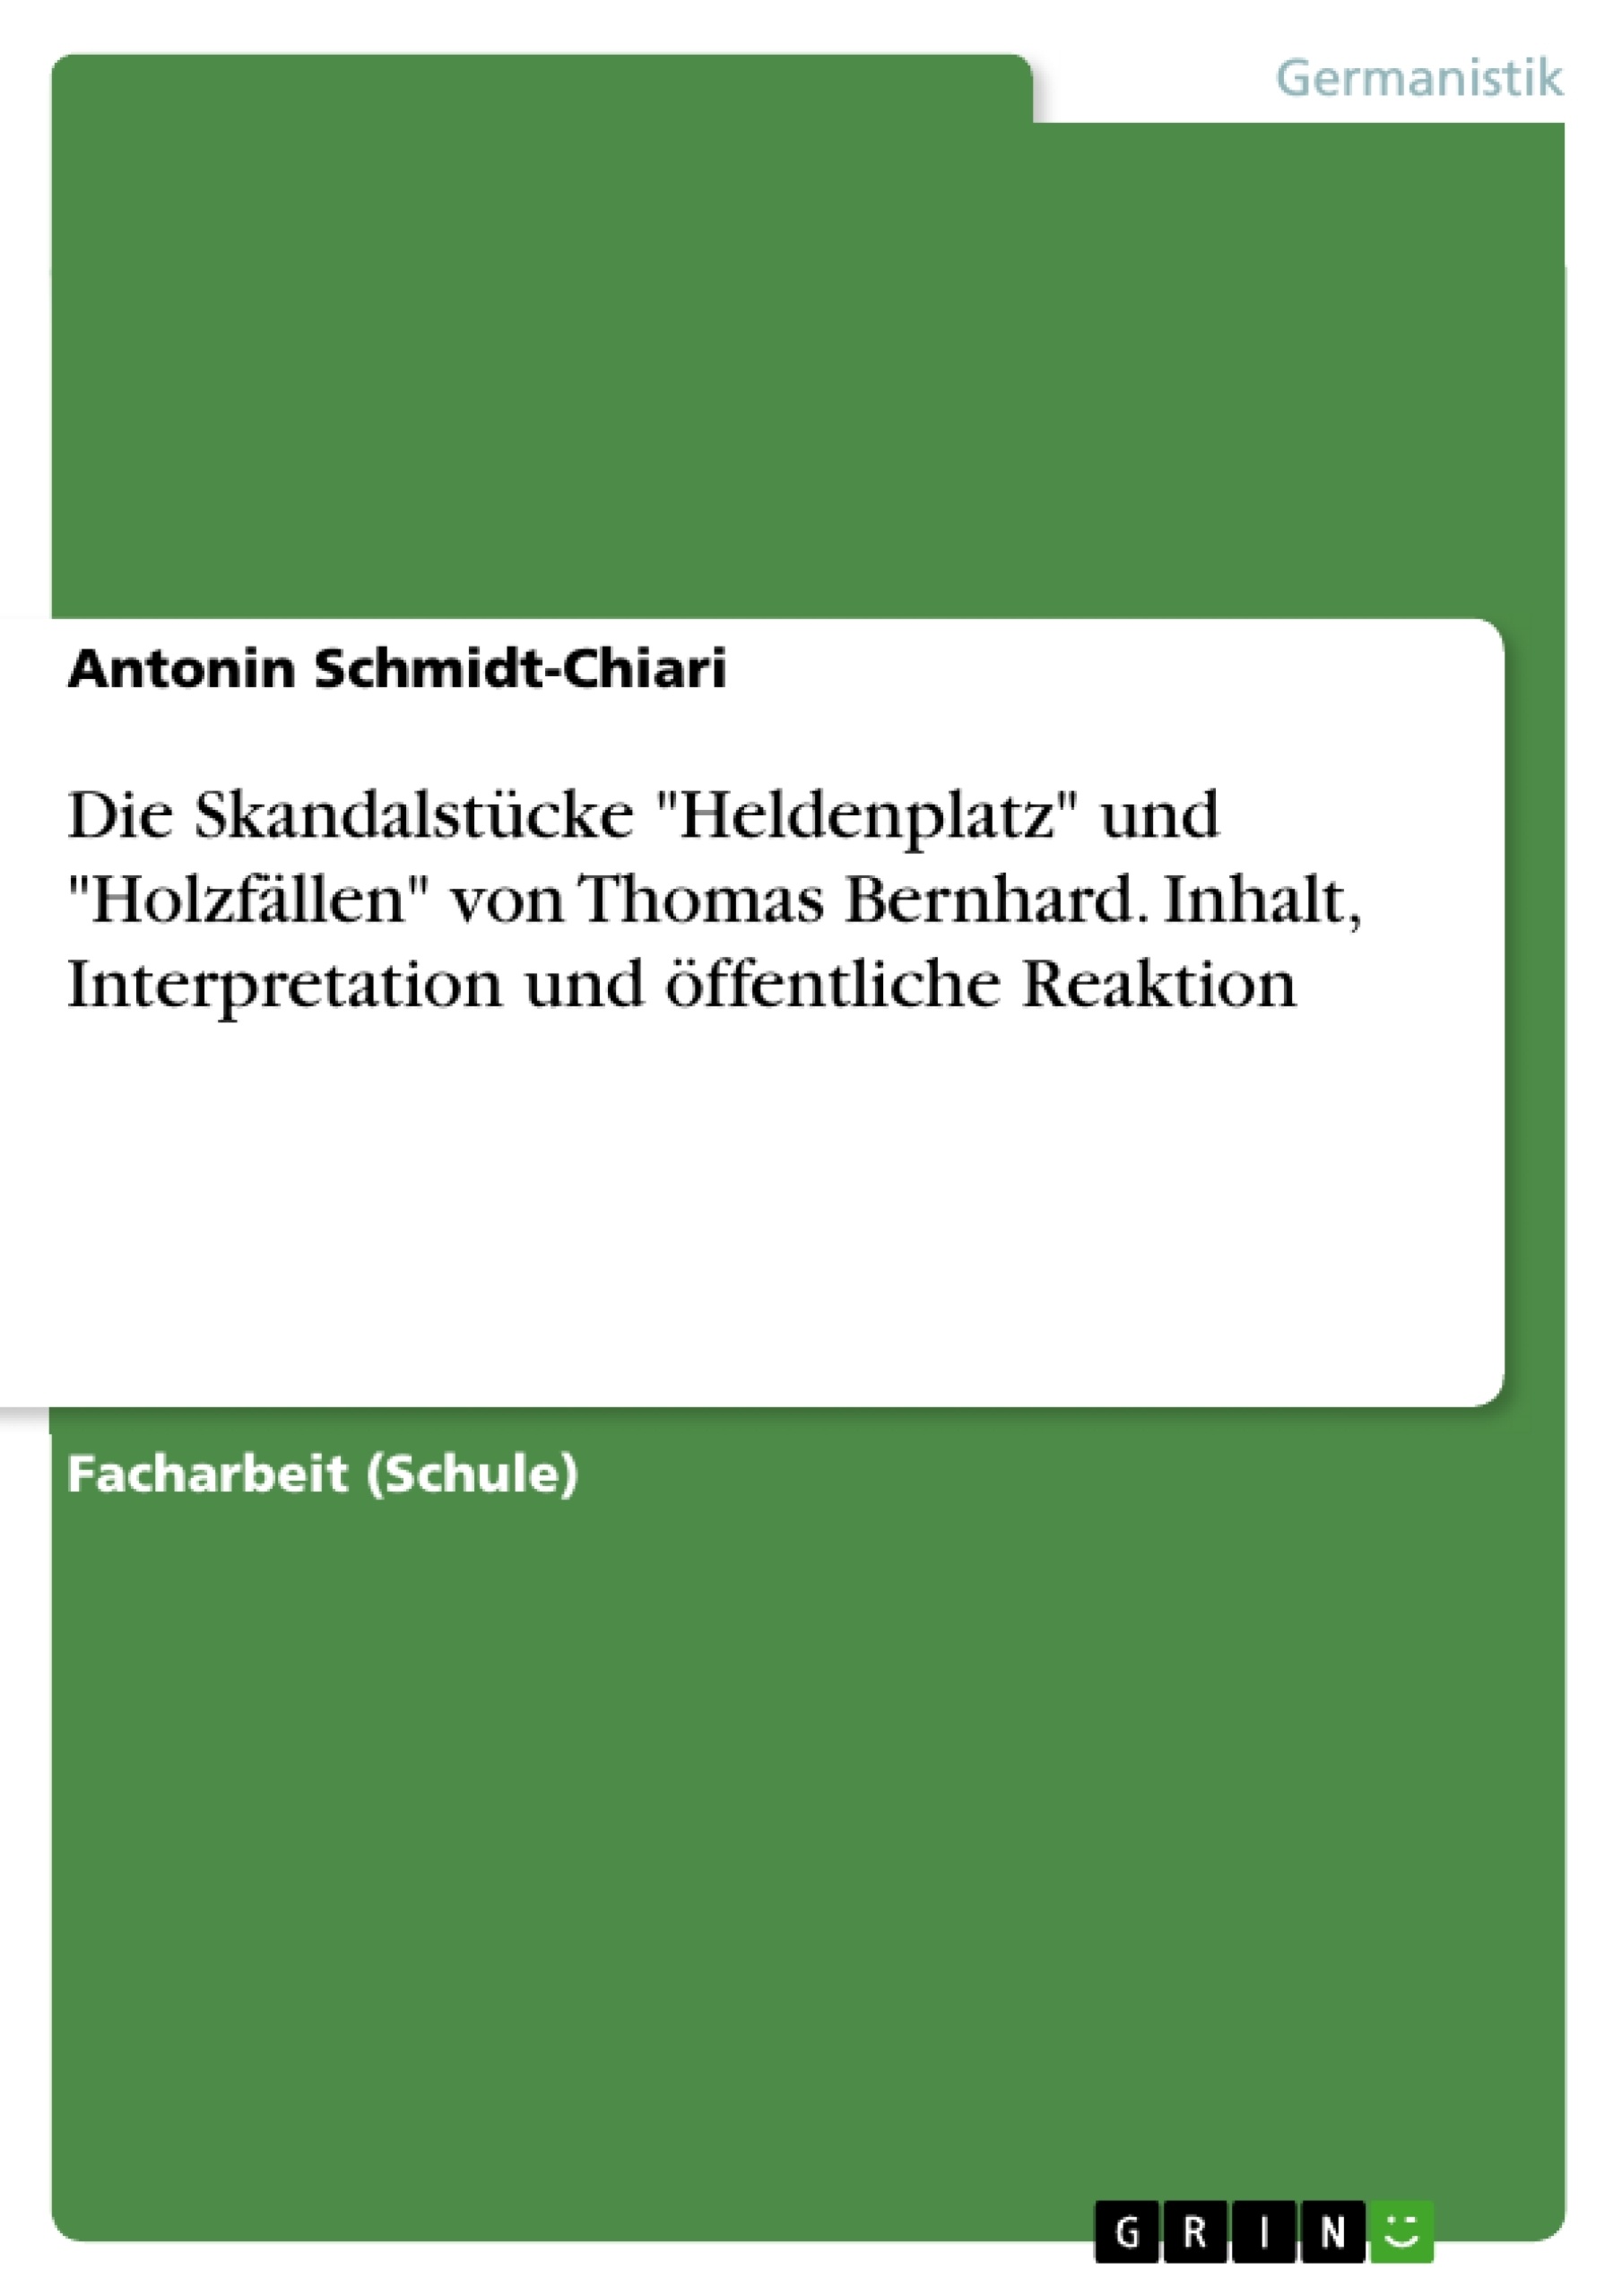 Title: Die Skandalstücke "Heldenplatz" und "Holzfällen" von Thomas Bernhard. Inhalt, Interpretation und öffentliche Reaktion